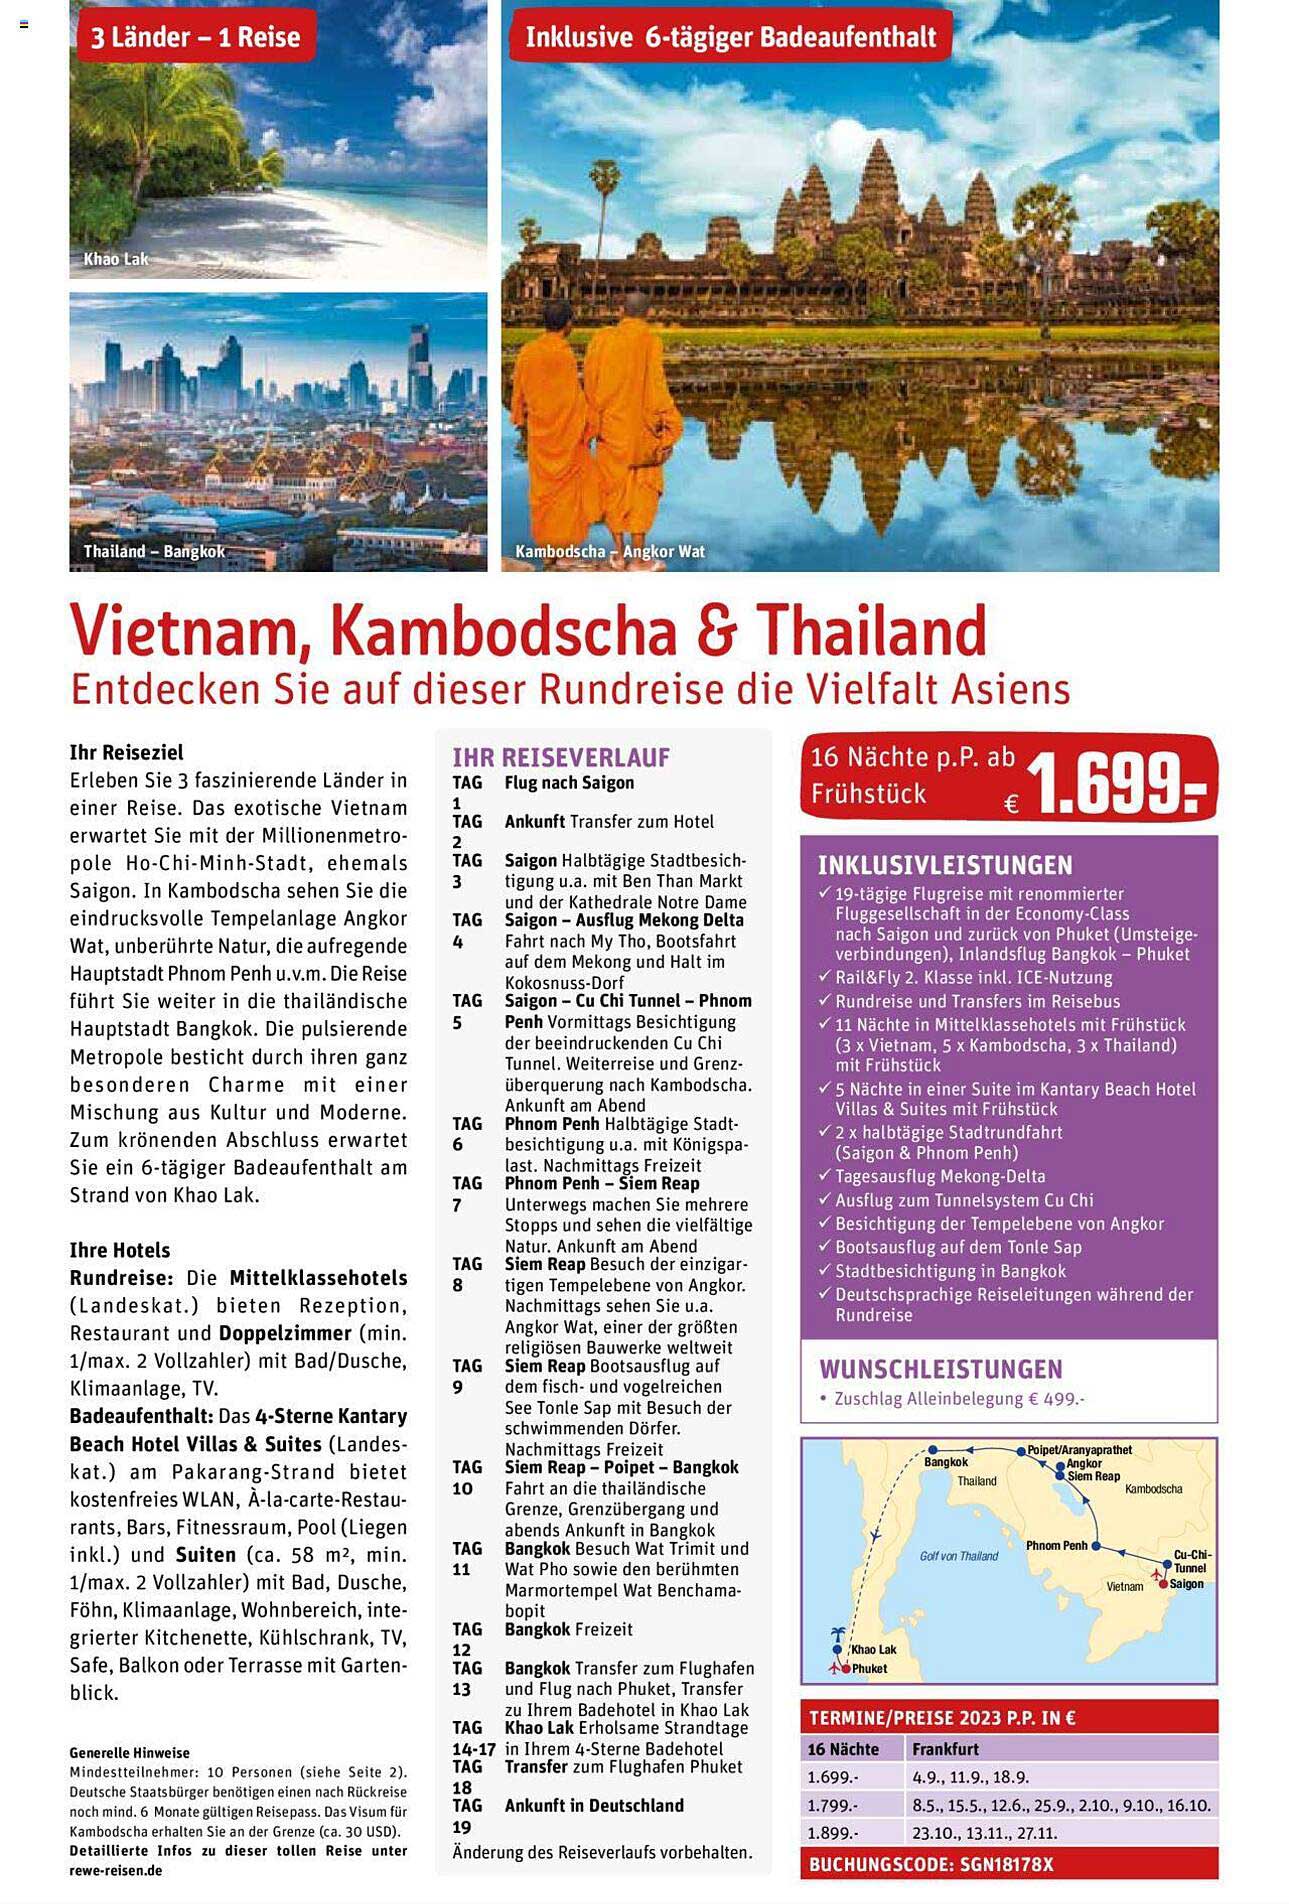 REWE Reisen Vietnam, Kambodscha & Thailand